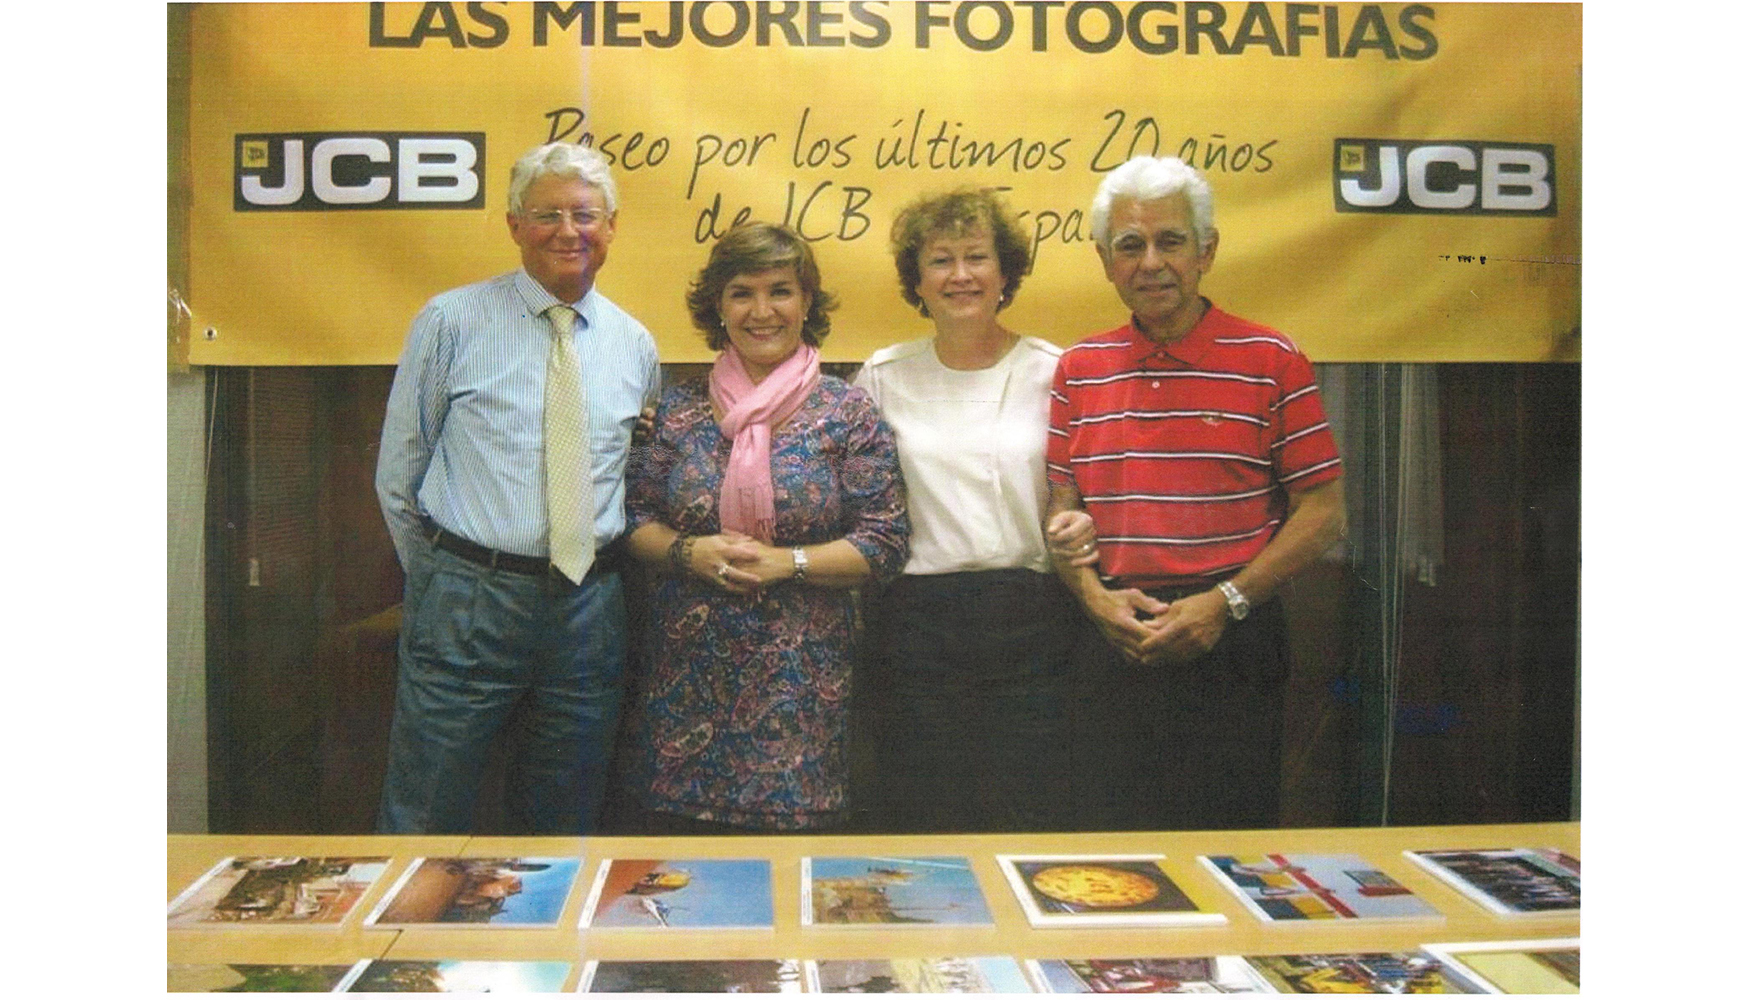 Claudio Fiorentini, Mara Luisa Prez, Brunhilde Rygiert y Beningno Bueno en la celebracin del 20 aniversario de JCB Espaa (2013)...